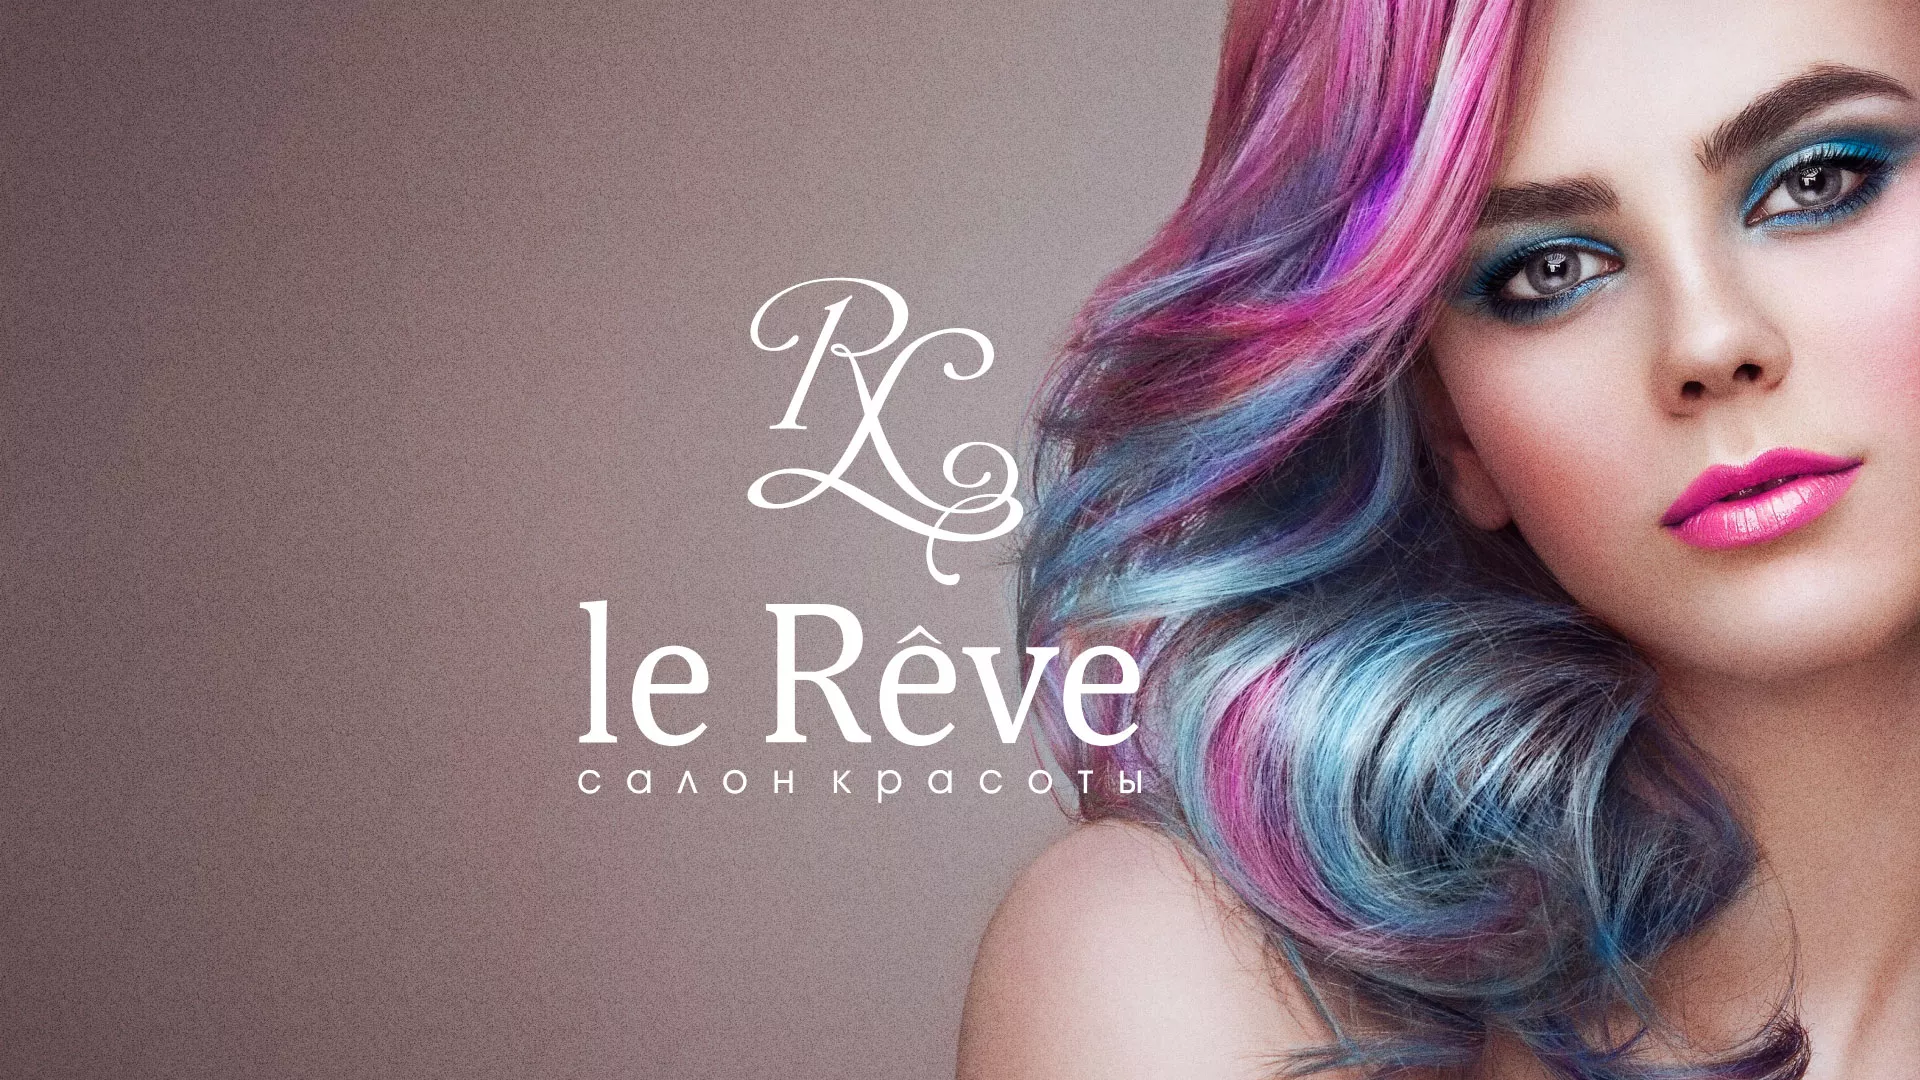 Создание сайта для салона красоты «Le Reve» в Гусь-Хрустальном